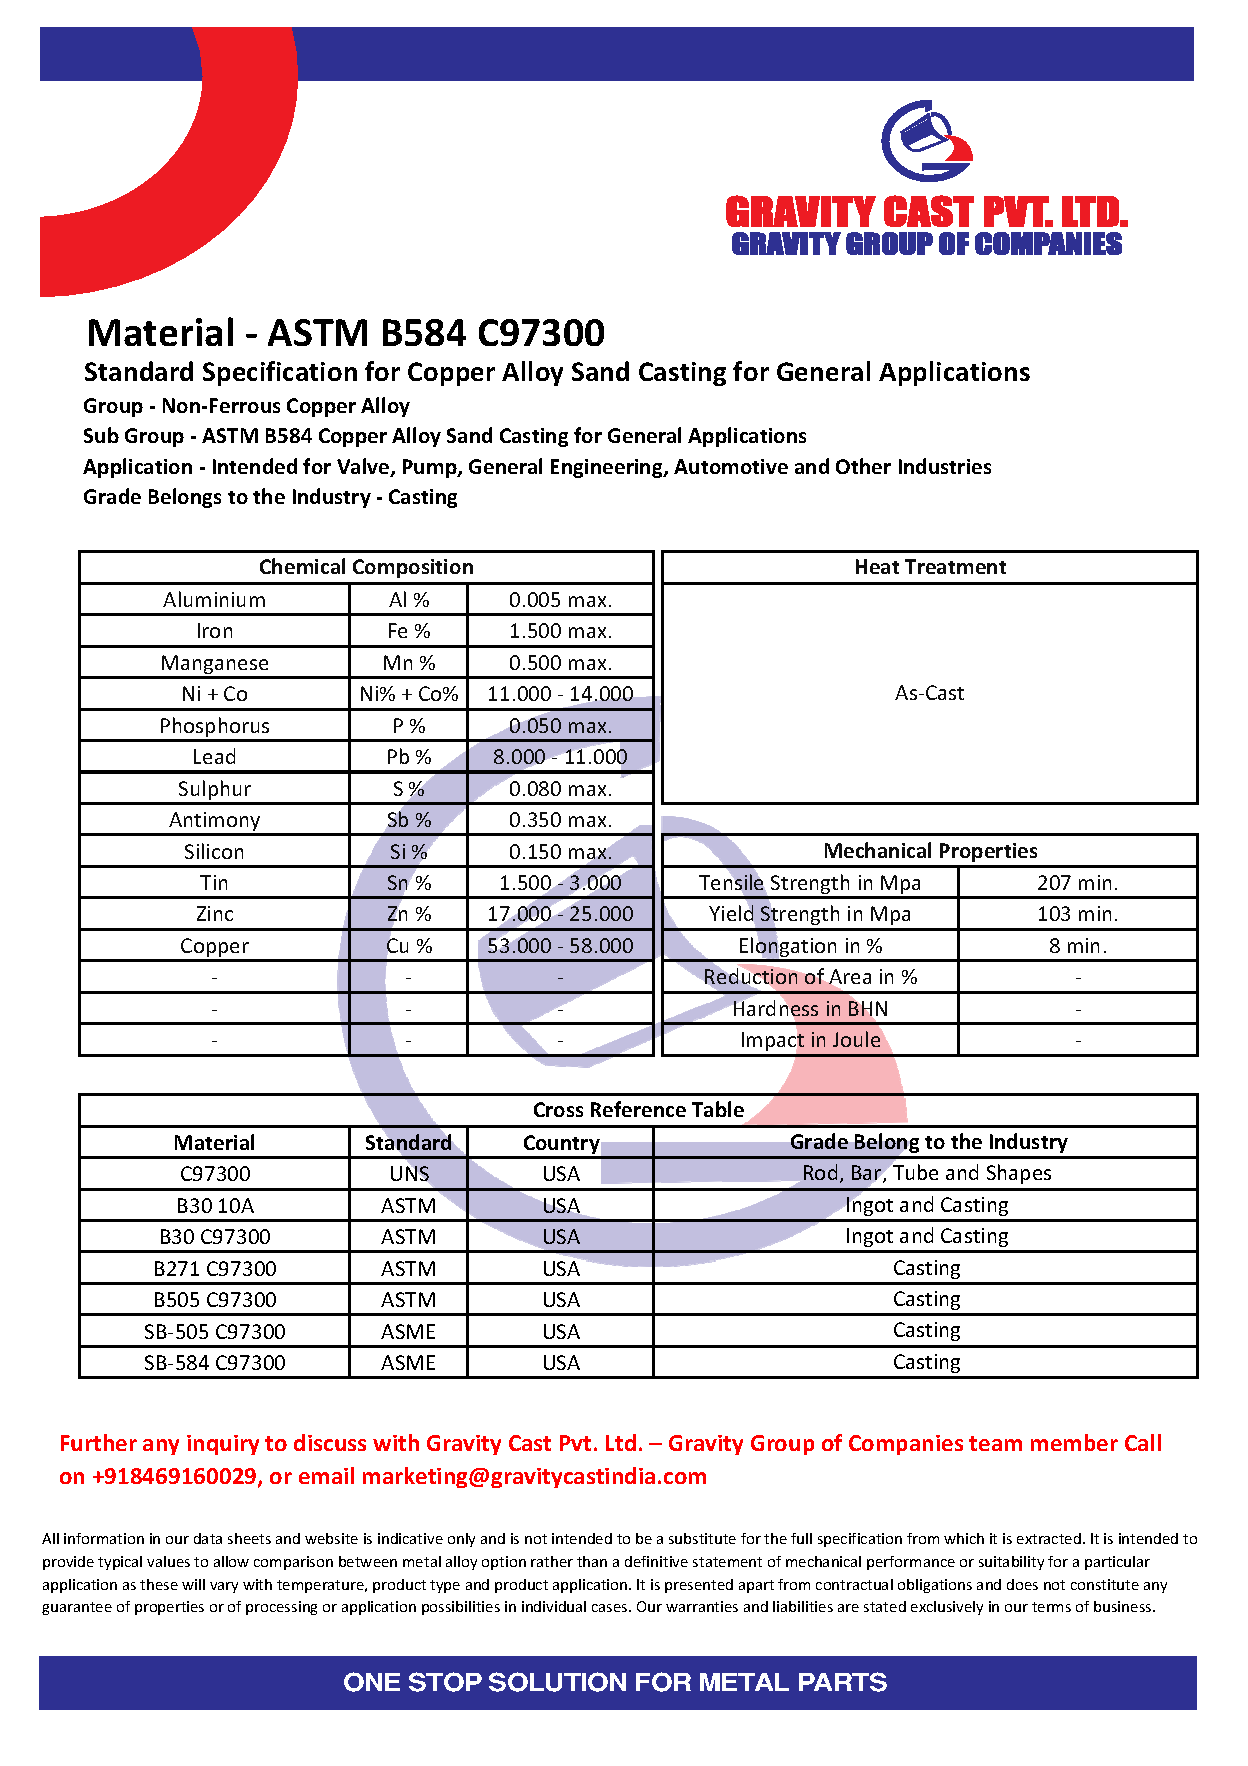 ASTM B584 C97300.pdf